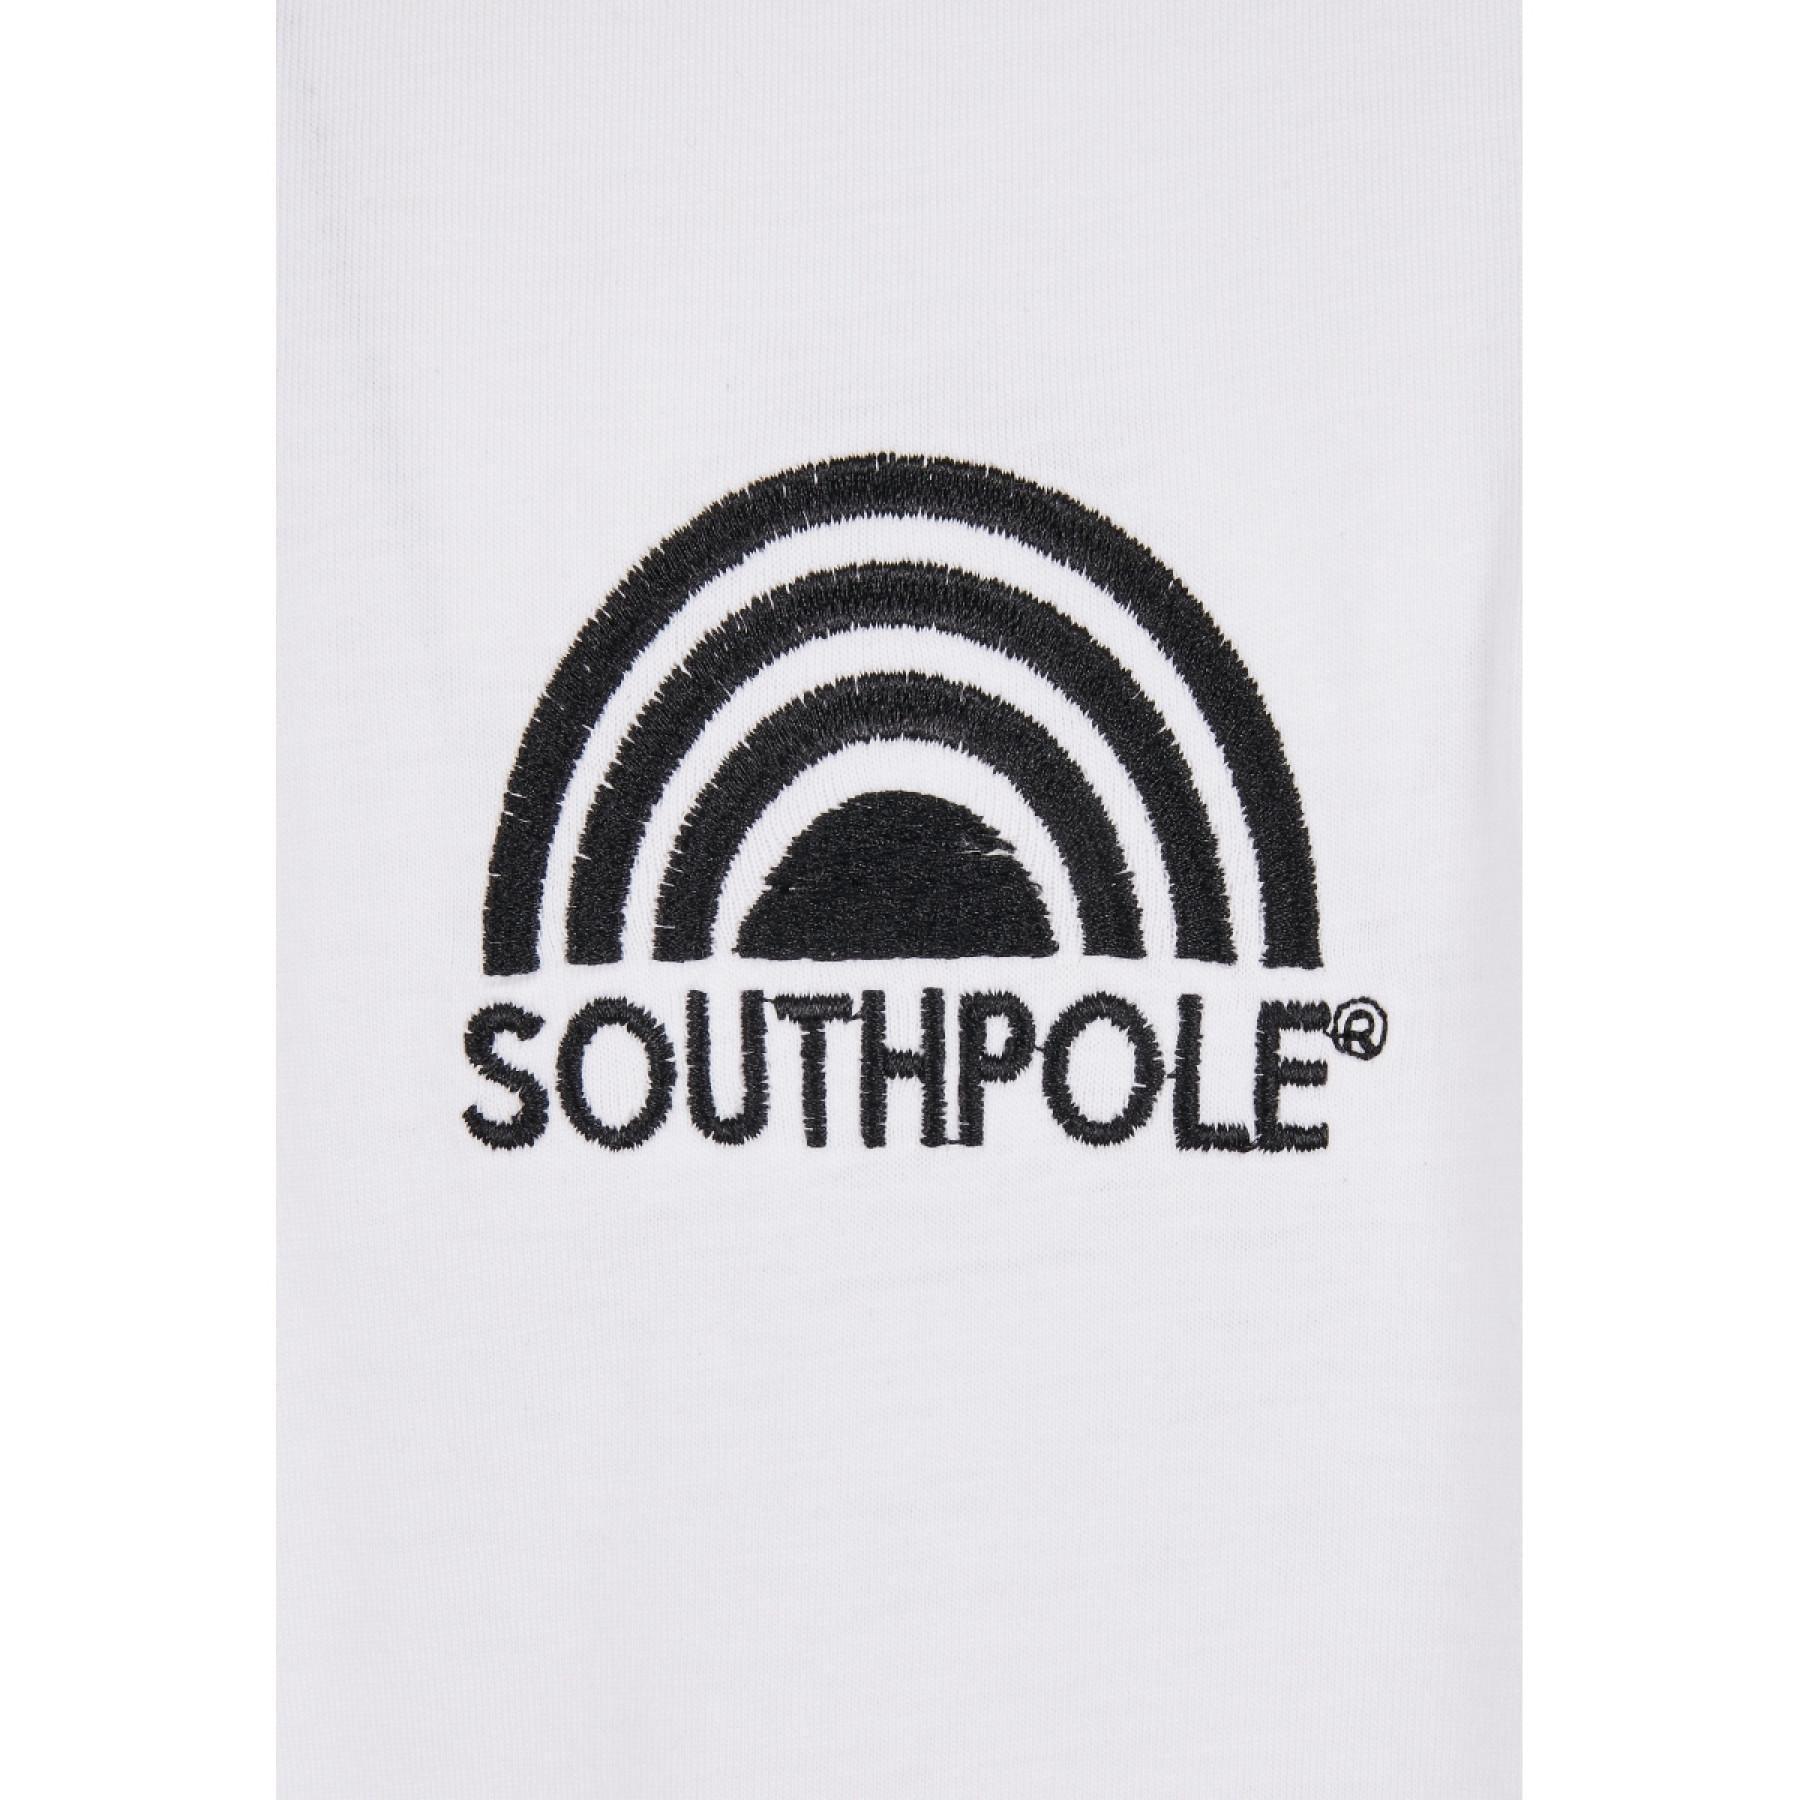 T-shirt Southpole basic double maniche